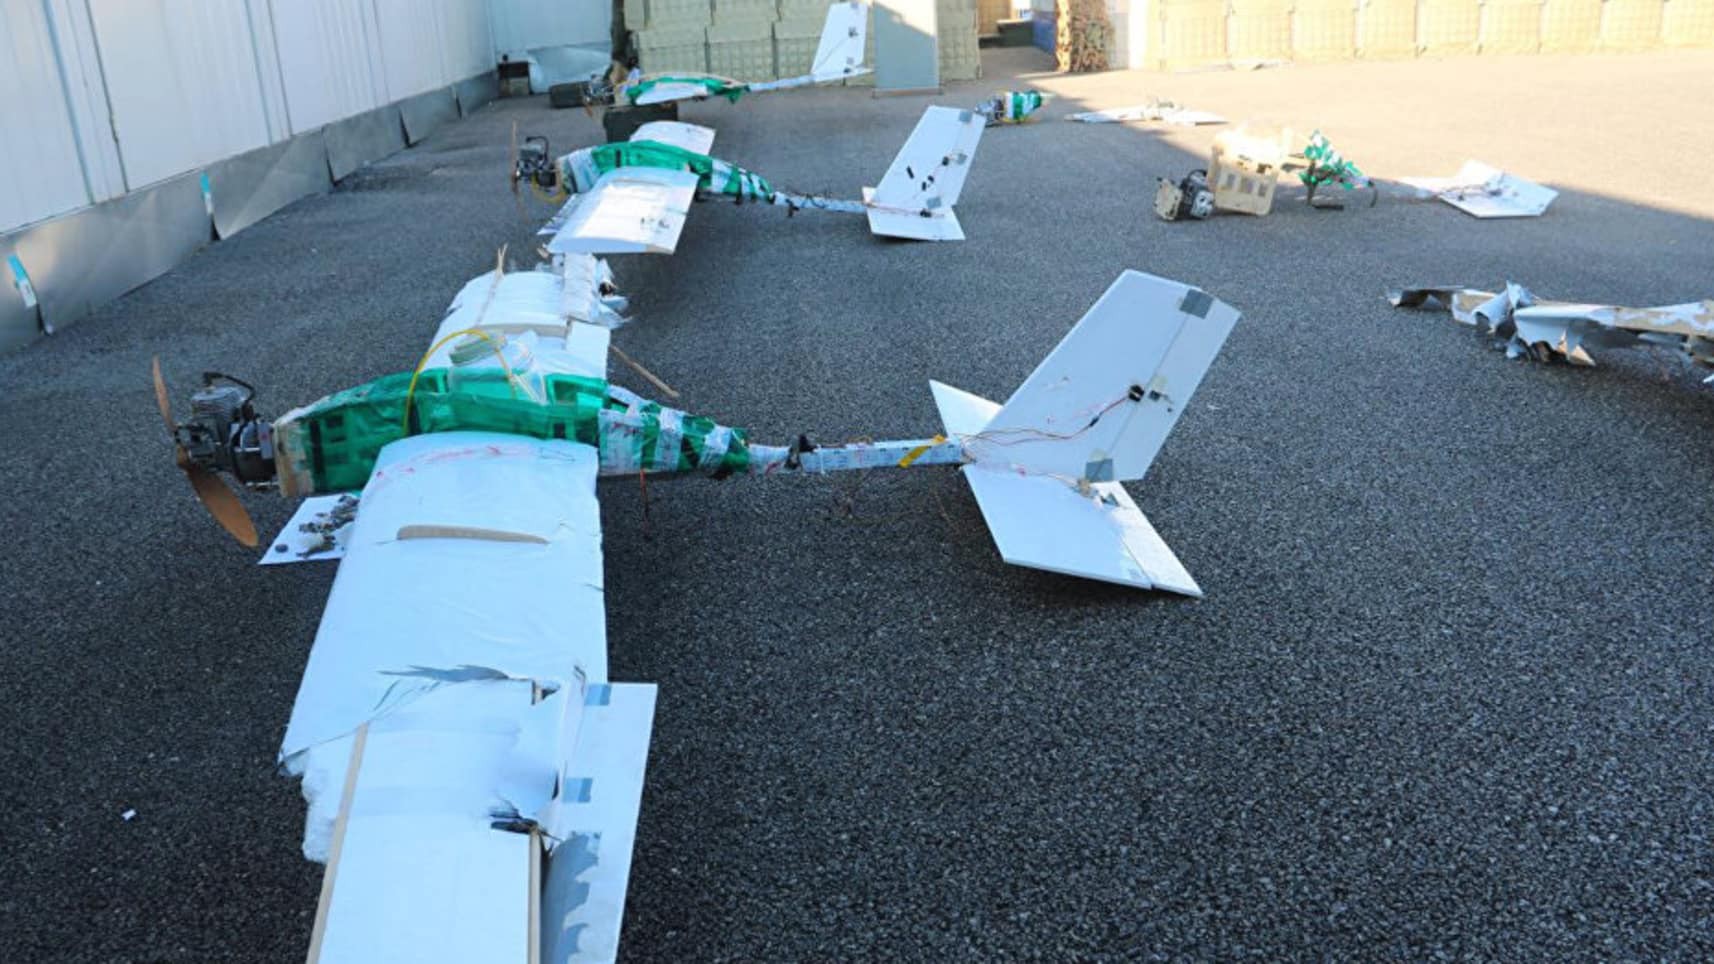 Máy bay Mỹ bị tố “phối hợp tấn công căn cứ Nga ở Syria” - Ảnh 1.